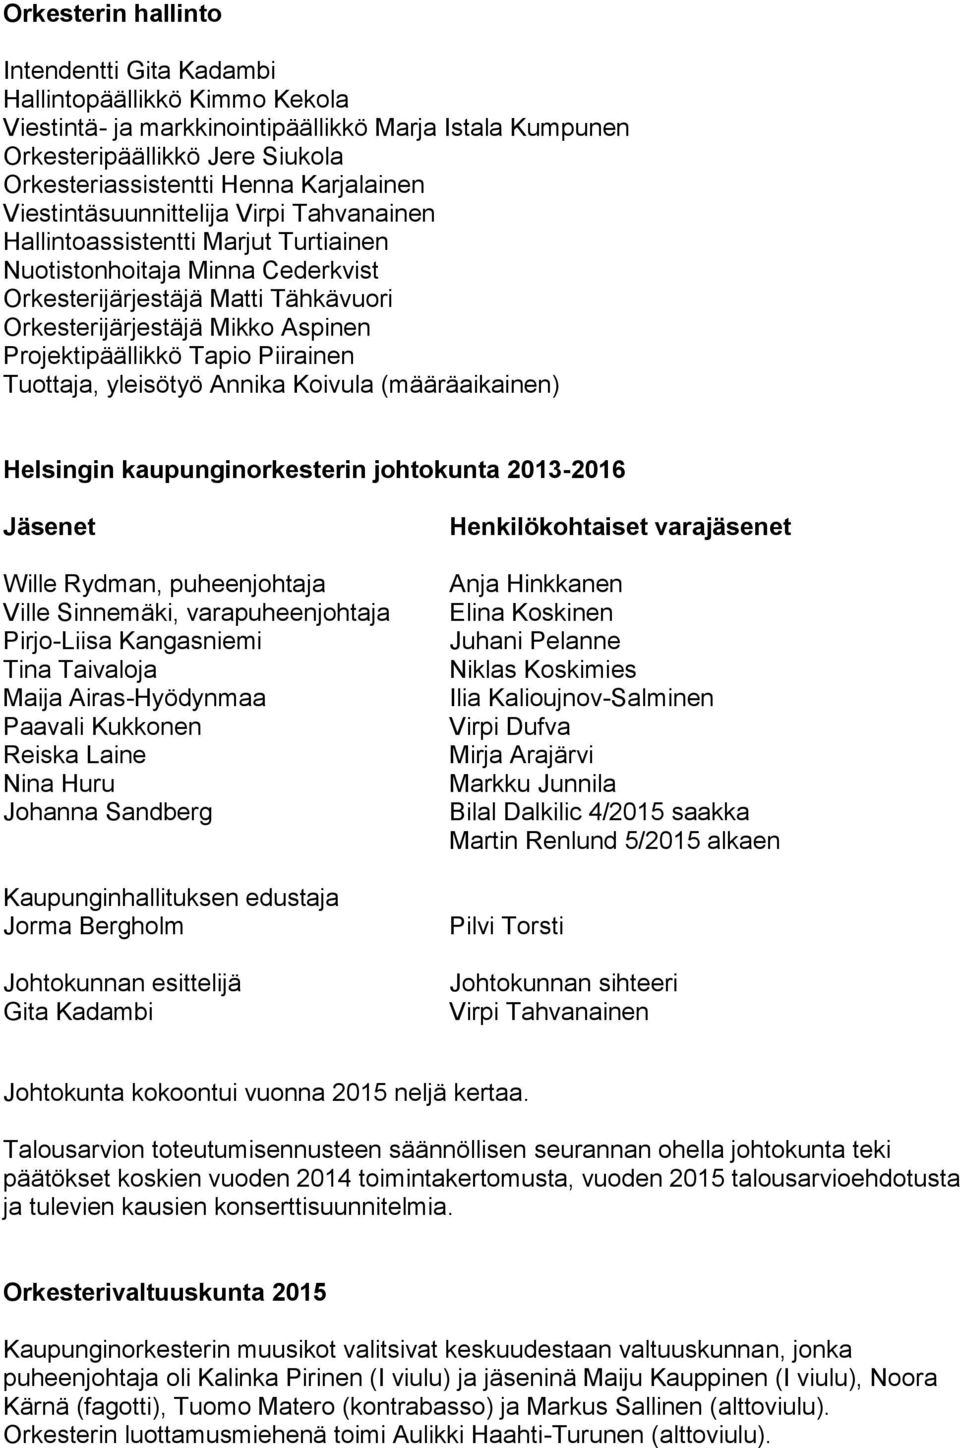 Projektipäällikkö Tapio Piirainen Tuottaja, yleisötyö Annika Koivula (määräaikainen) n johtokunta 2013-2016 Jäsenet Wille Rydman, puheenjohtaja Ville Sinnemäki, varapuheenjohtaja Pirjo-Liisa